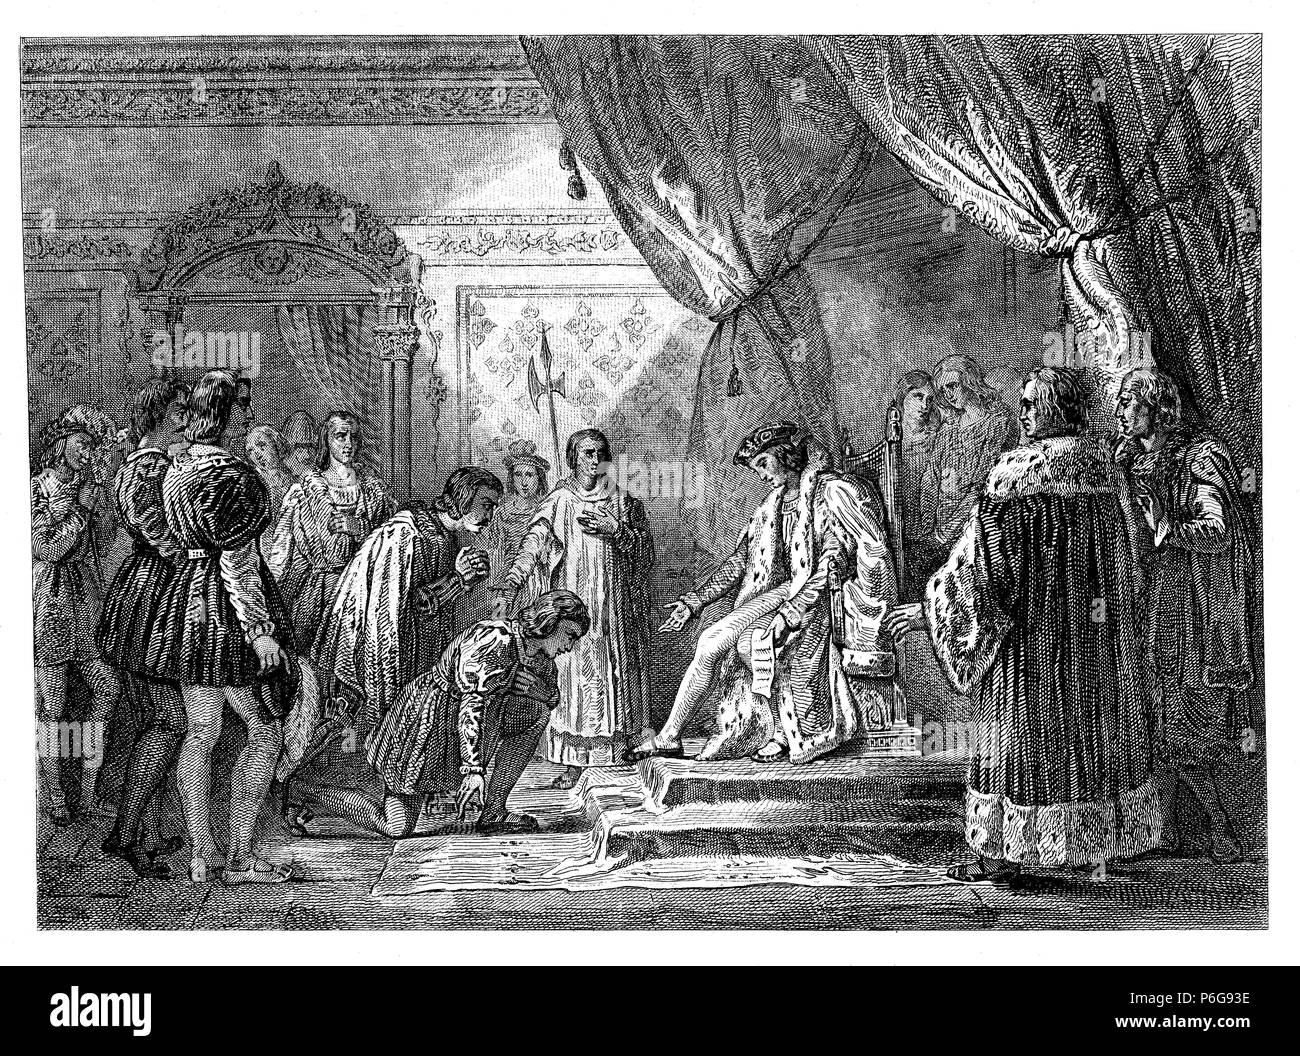 Francia. Clemencia del rey Luis XII en abril de 1498 con motivo de su subida al trono. Grabado de 1853. Stock Photo